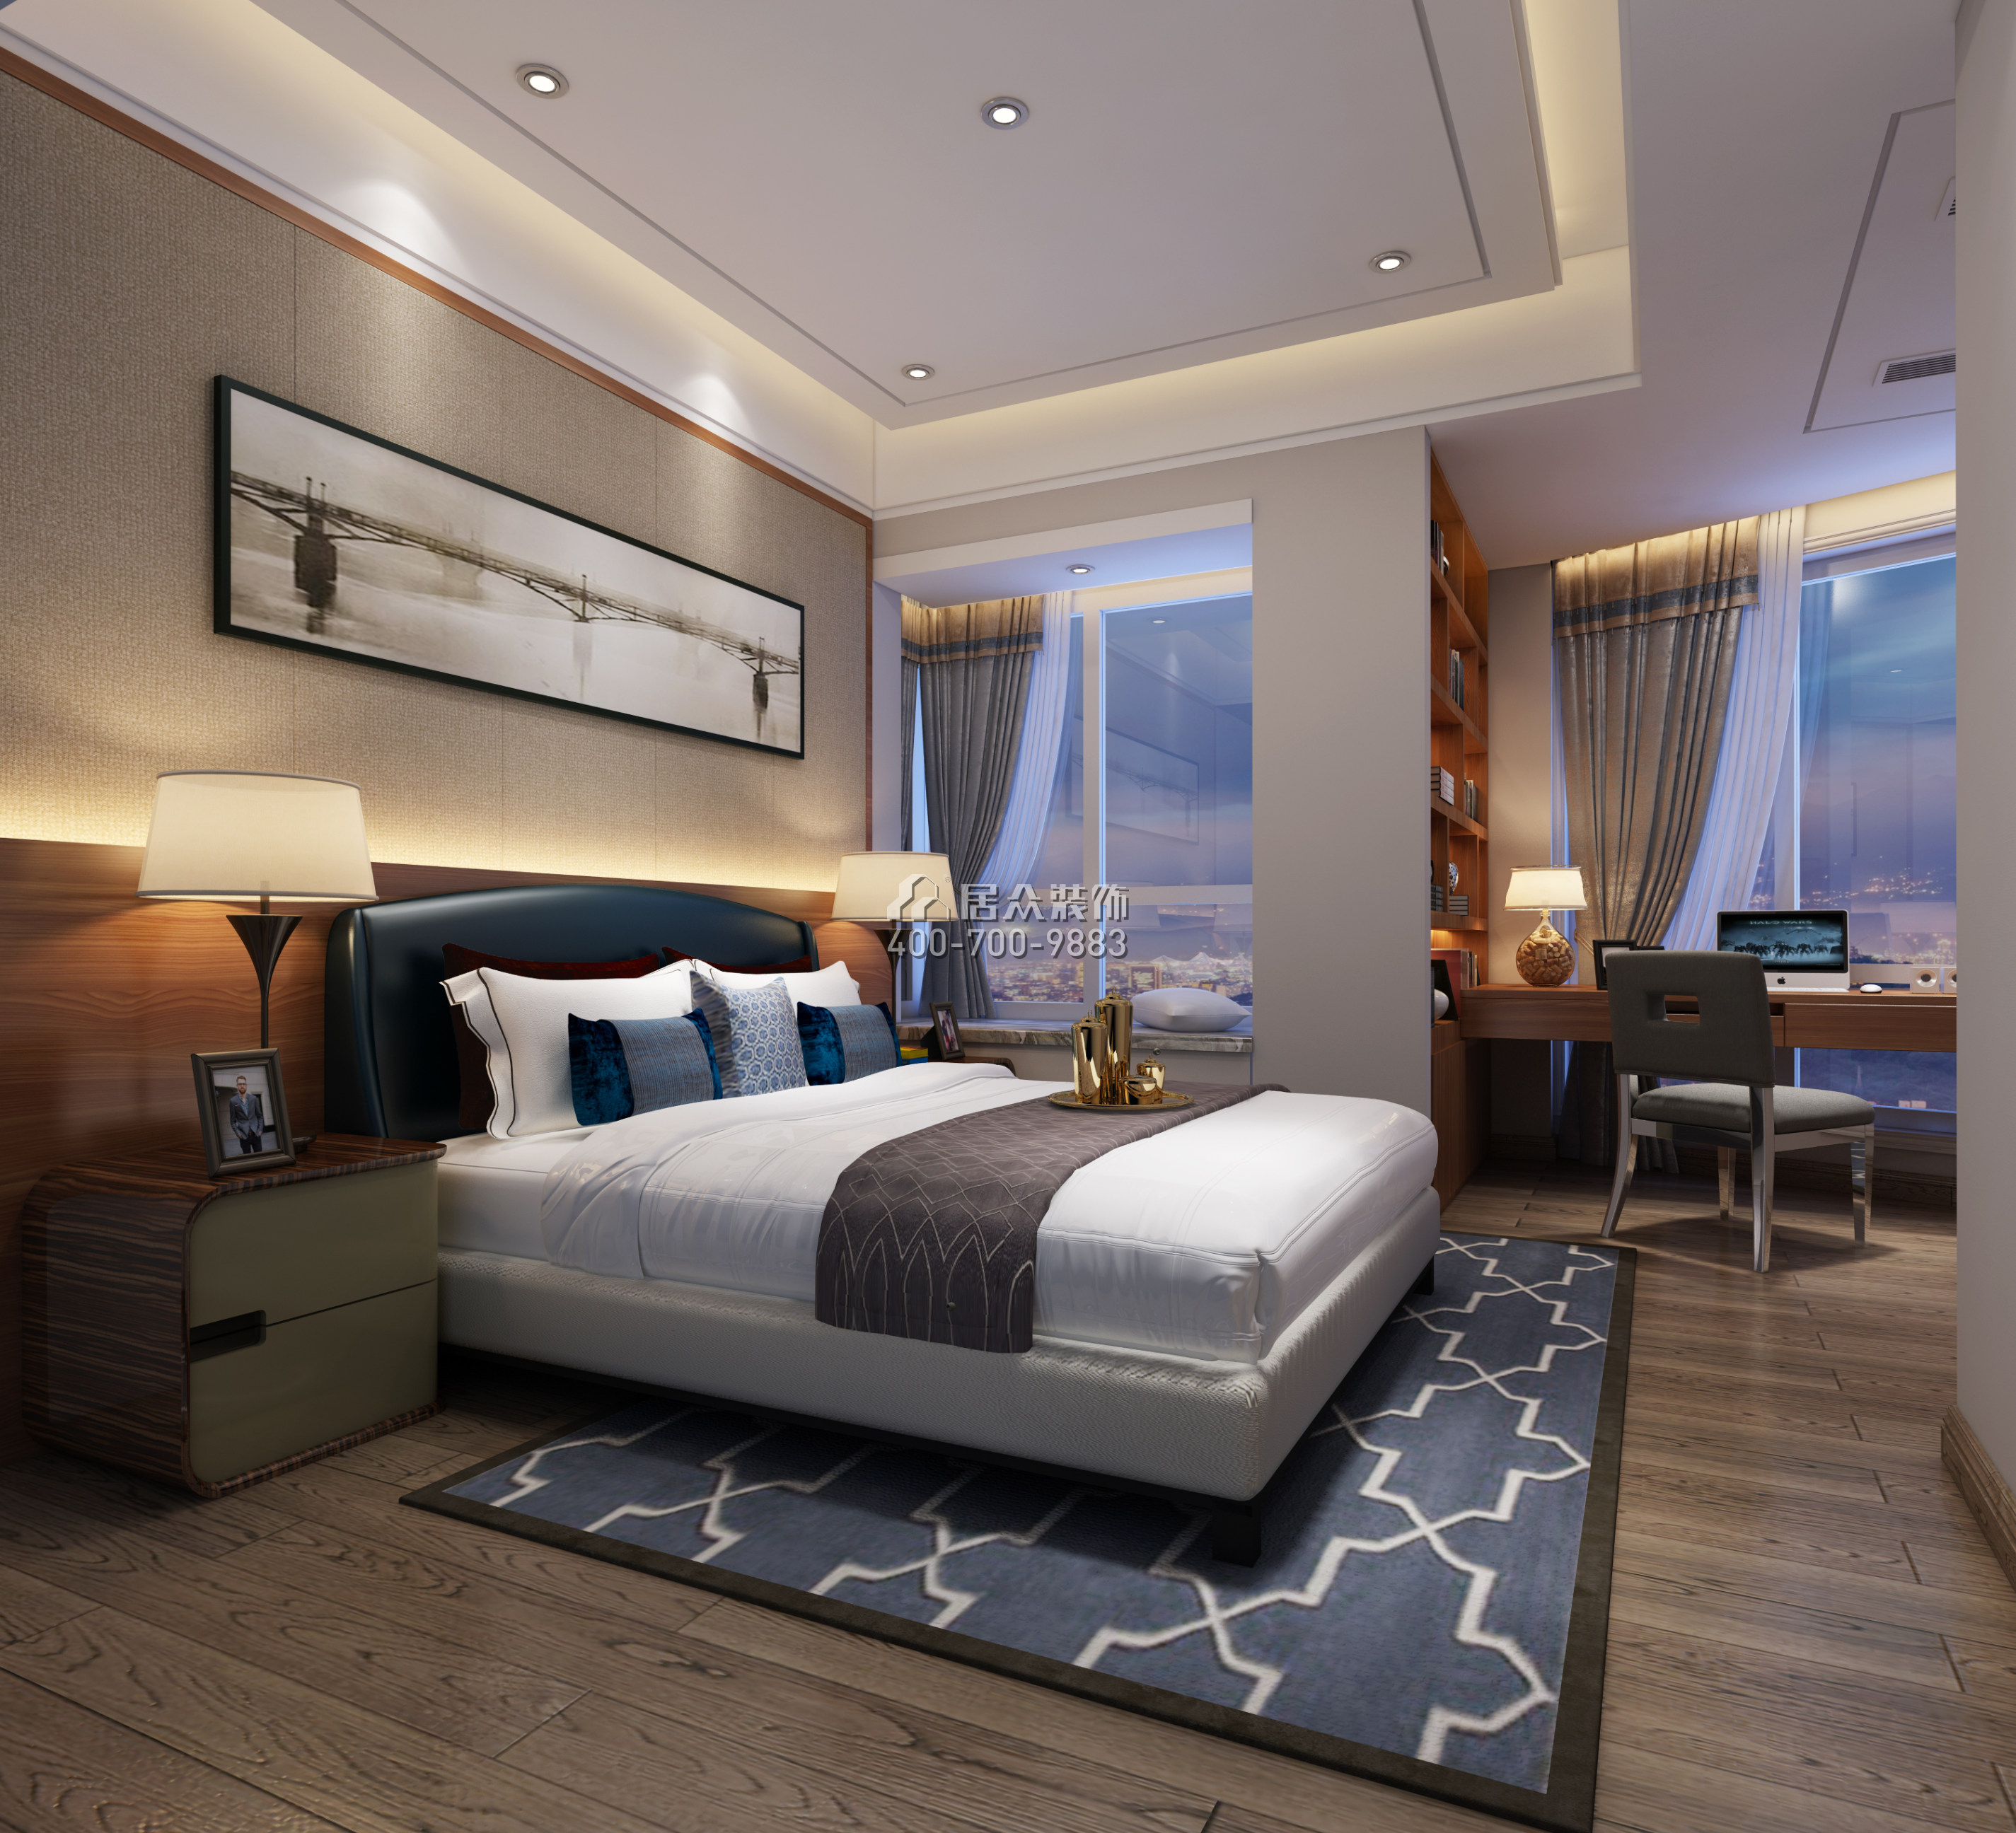 熙园269平方米美式风格平层户型卧室装修效果图